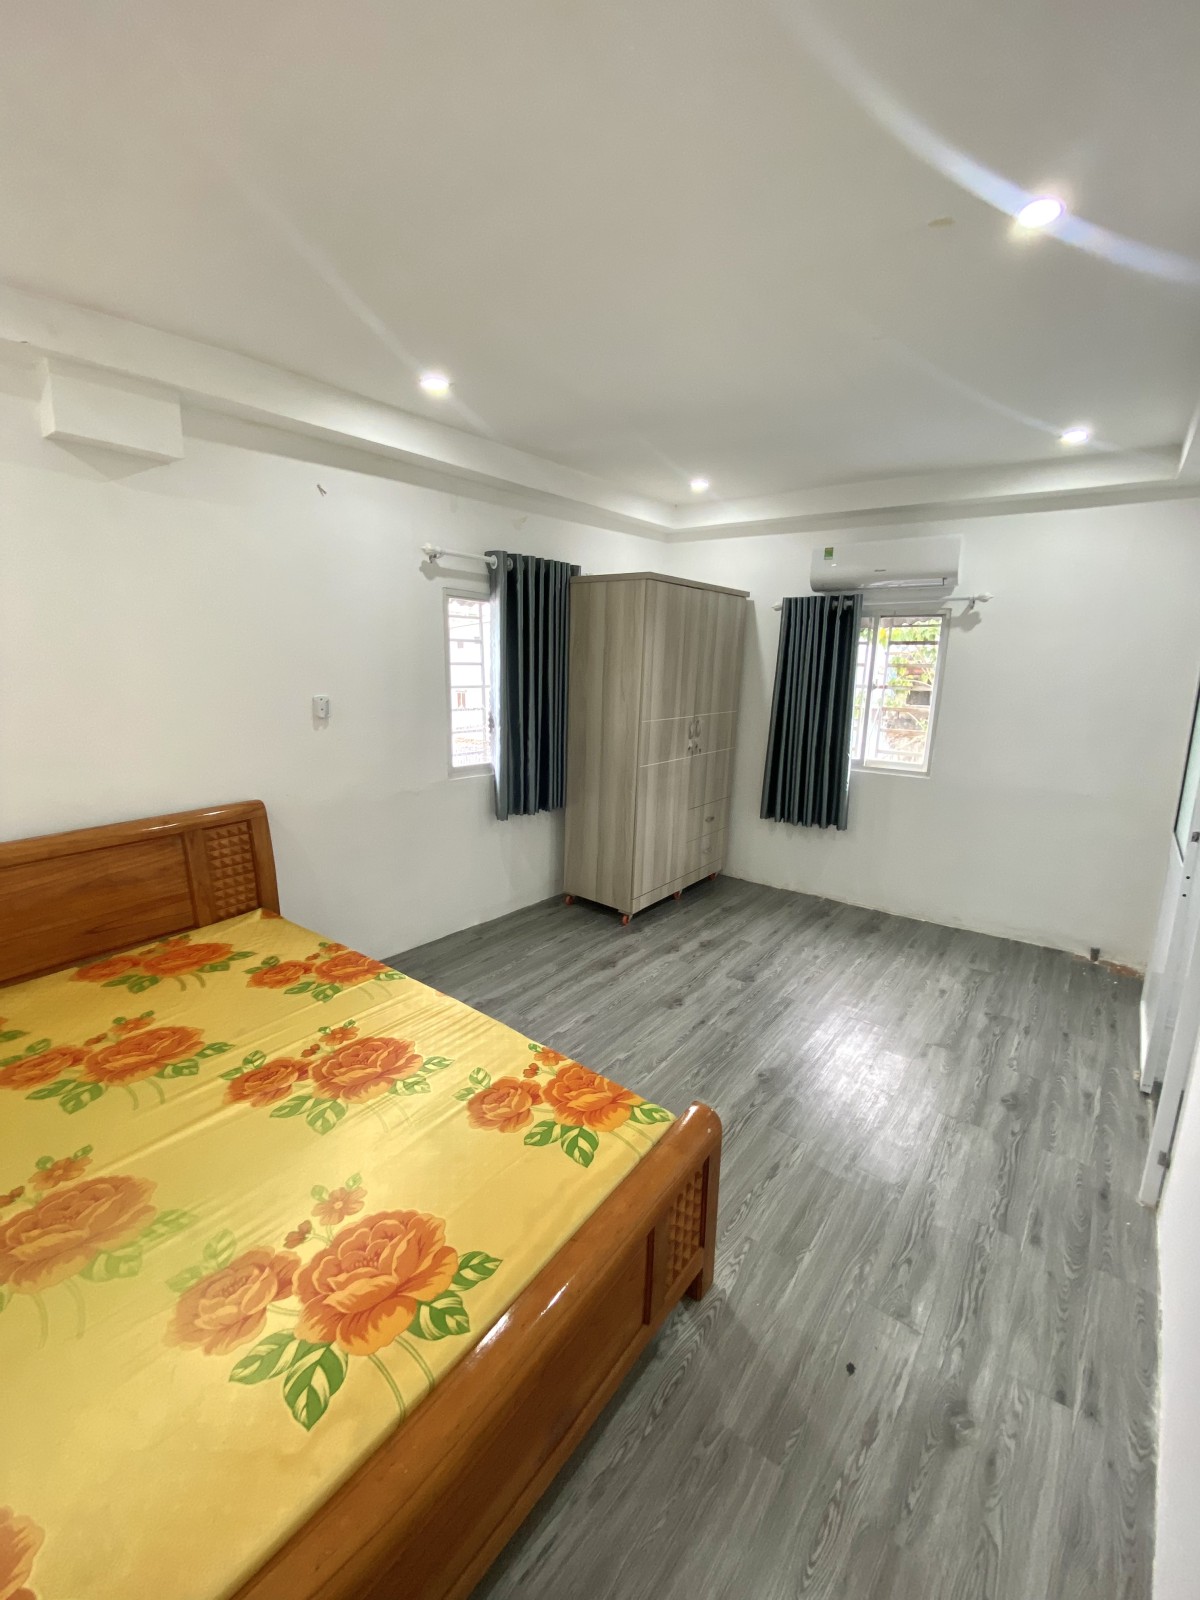 Căn hộ 1 phòng ngủ tách biệt, có bếp riêng, full nội thất, gần công viên Lê Thị Riêng